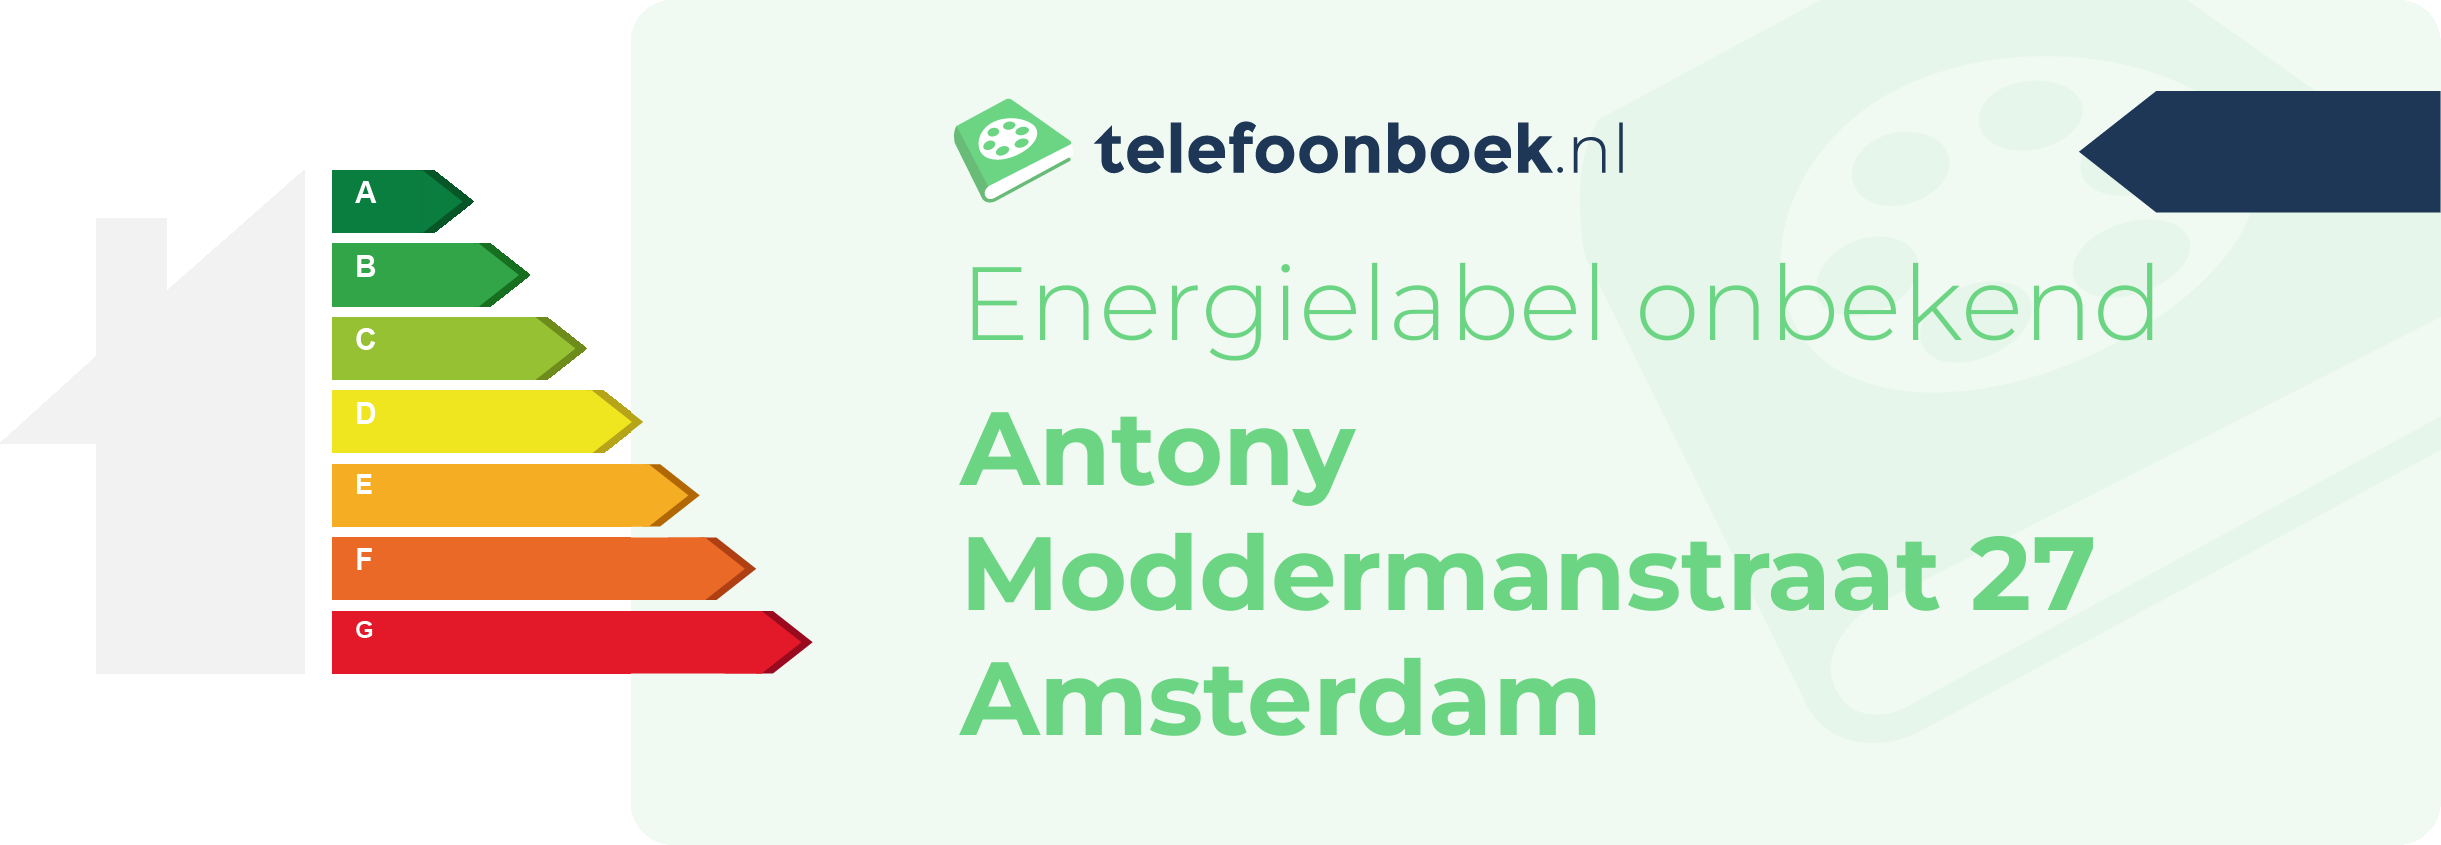 Energielabel Antony Moddermanstraat 27 Amsterdam